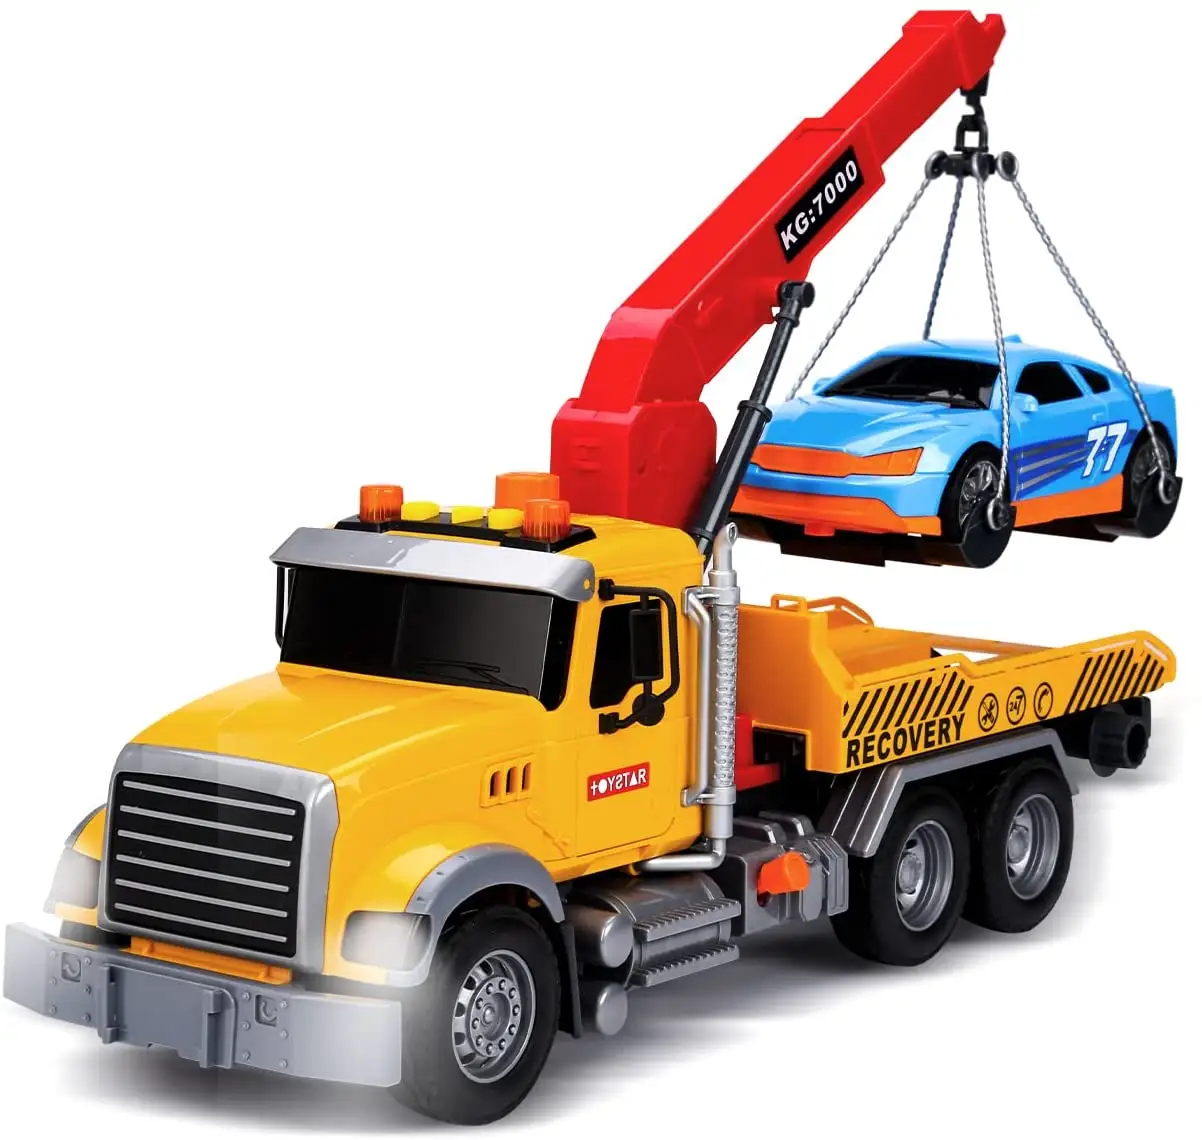 बड़ा हुक के साथ टो ट्रक और कार के लिए लड़कों के लिए वापस खींच ट्रक खिलौने wih प्रकाश और ध्वनि बच्चों 1:18 प्लास्टिक टो ट्रक